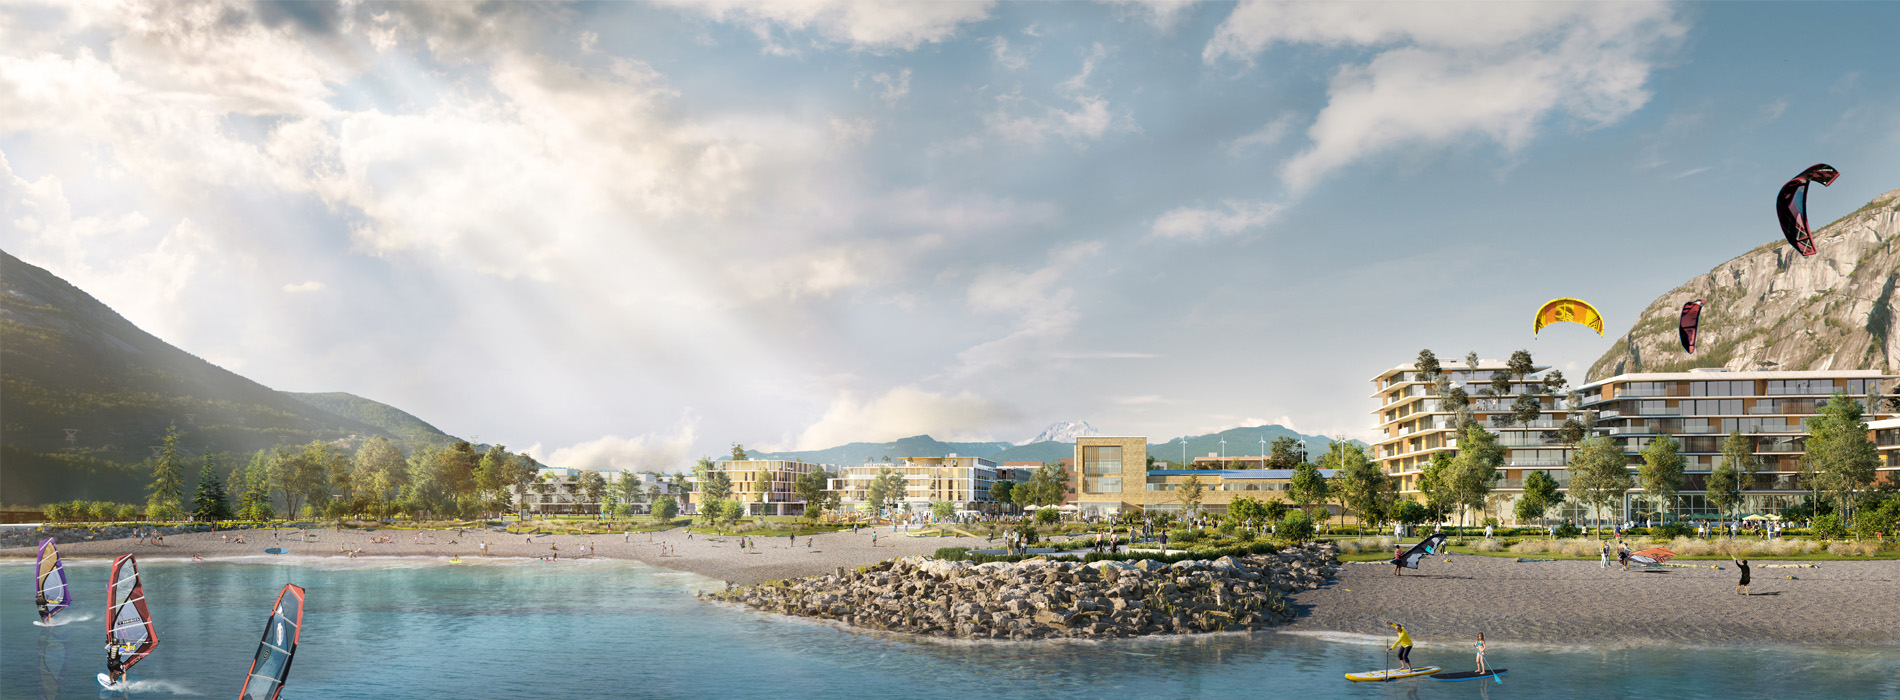 Oceanfront Squamish development